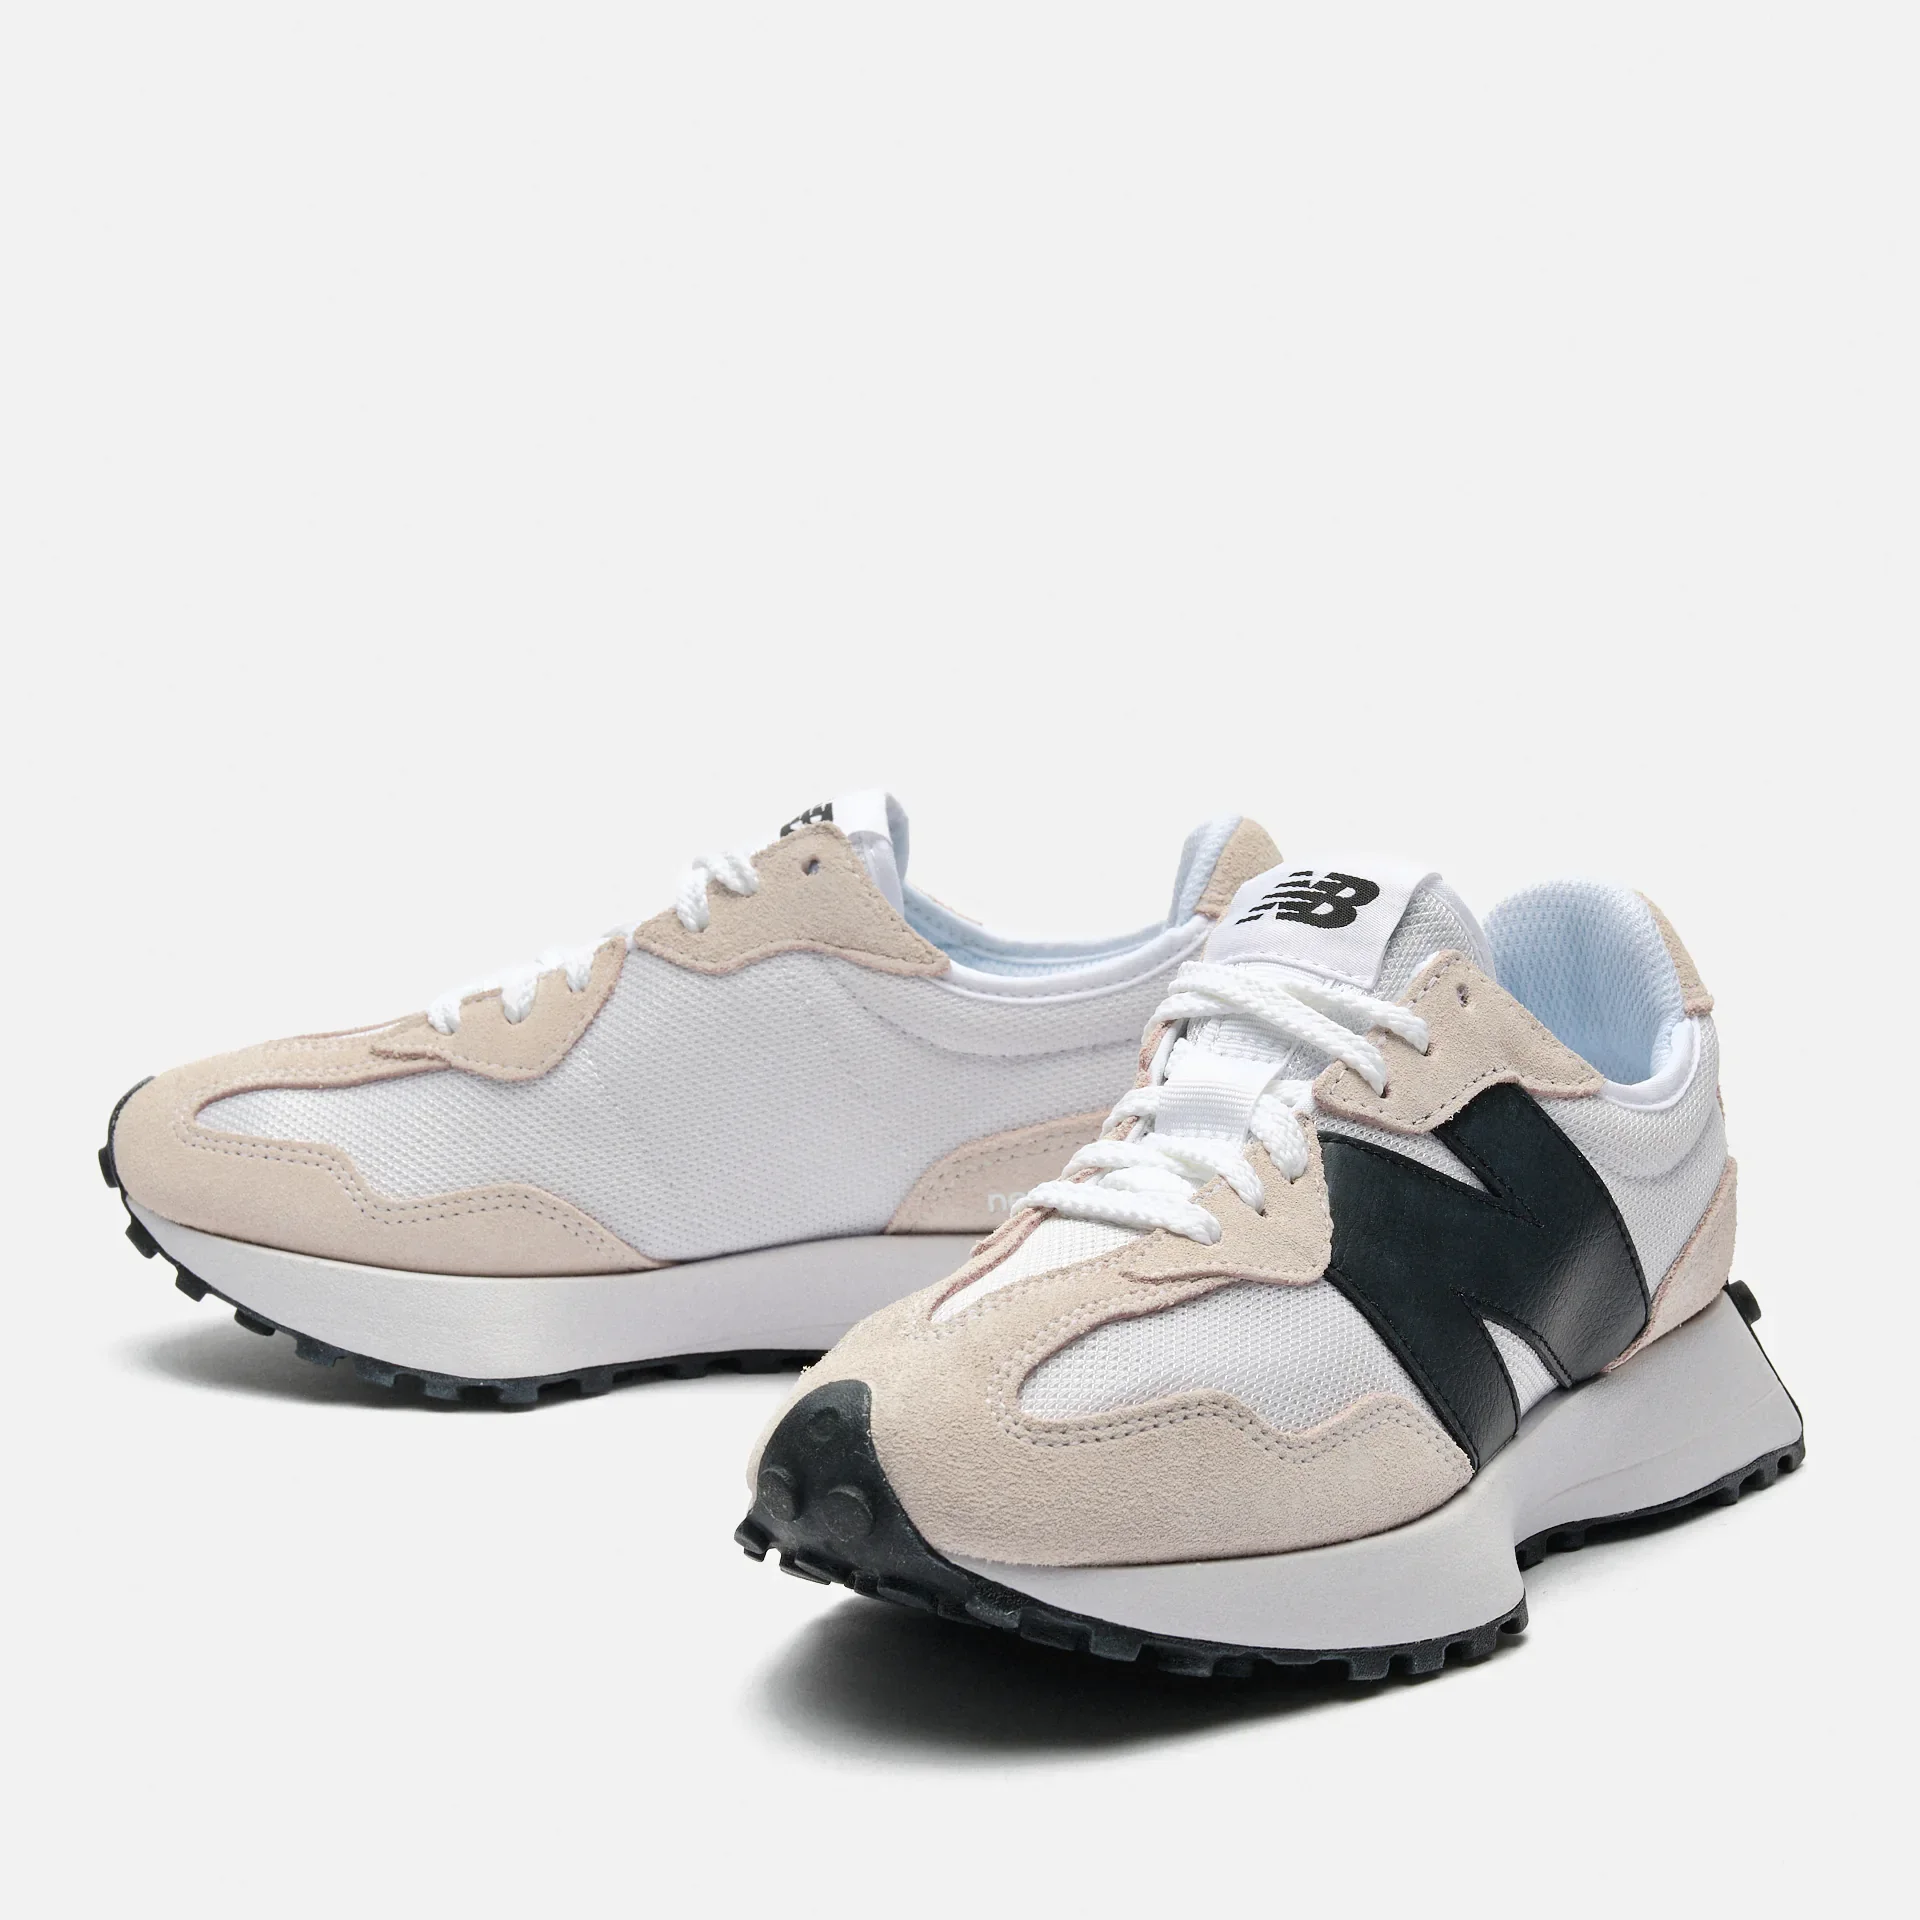 New Balance MS327V1 Sneaker White/Black